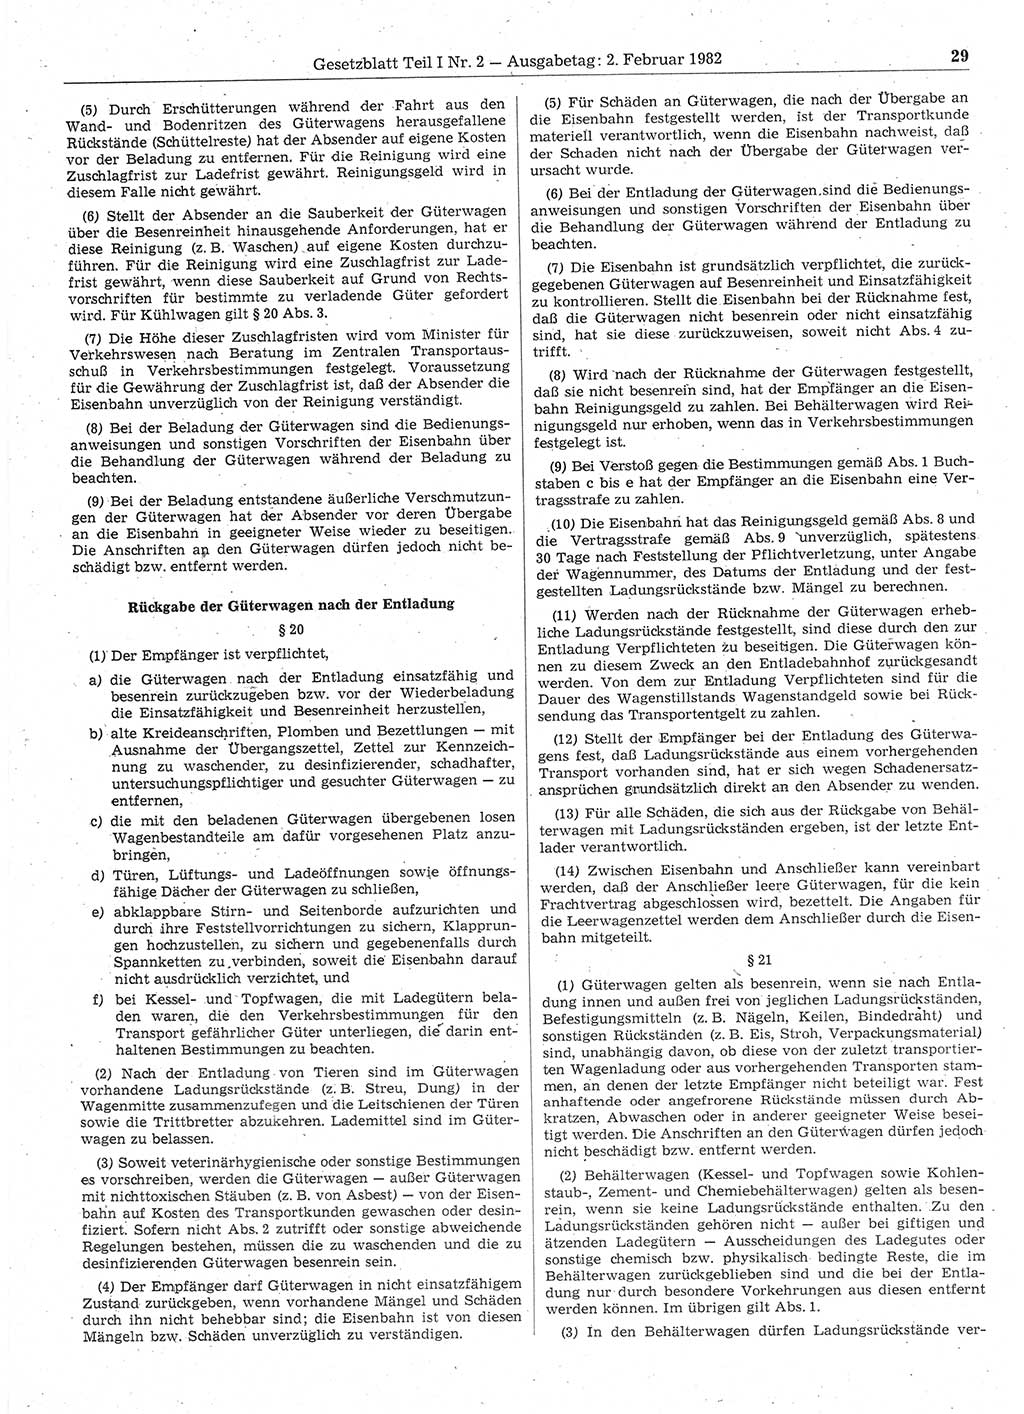 Gesetzblatt (GBl.) der Deutschen Demokratischen Republik (DDR) Teil Ⅰ 1982, Seite 29 (GBl. DDR Ⅰ 1982, S. 29)